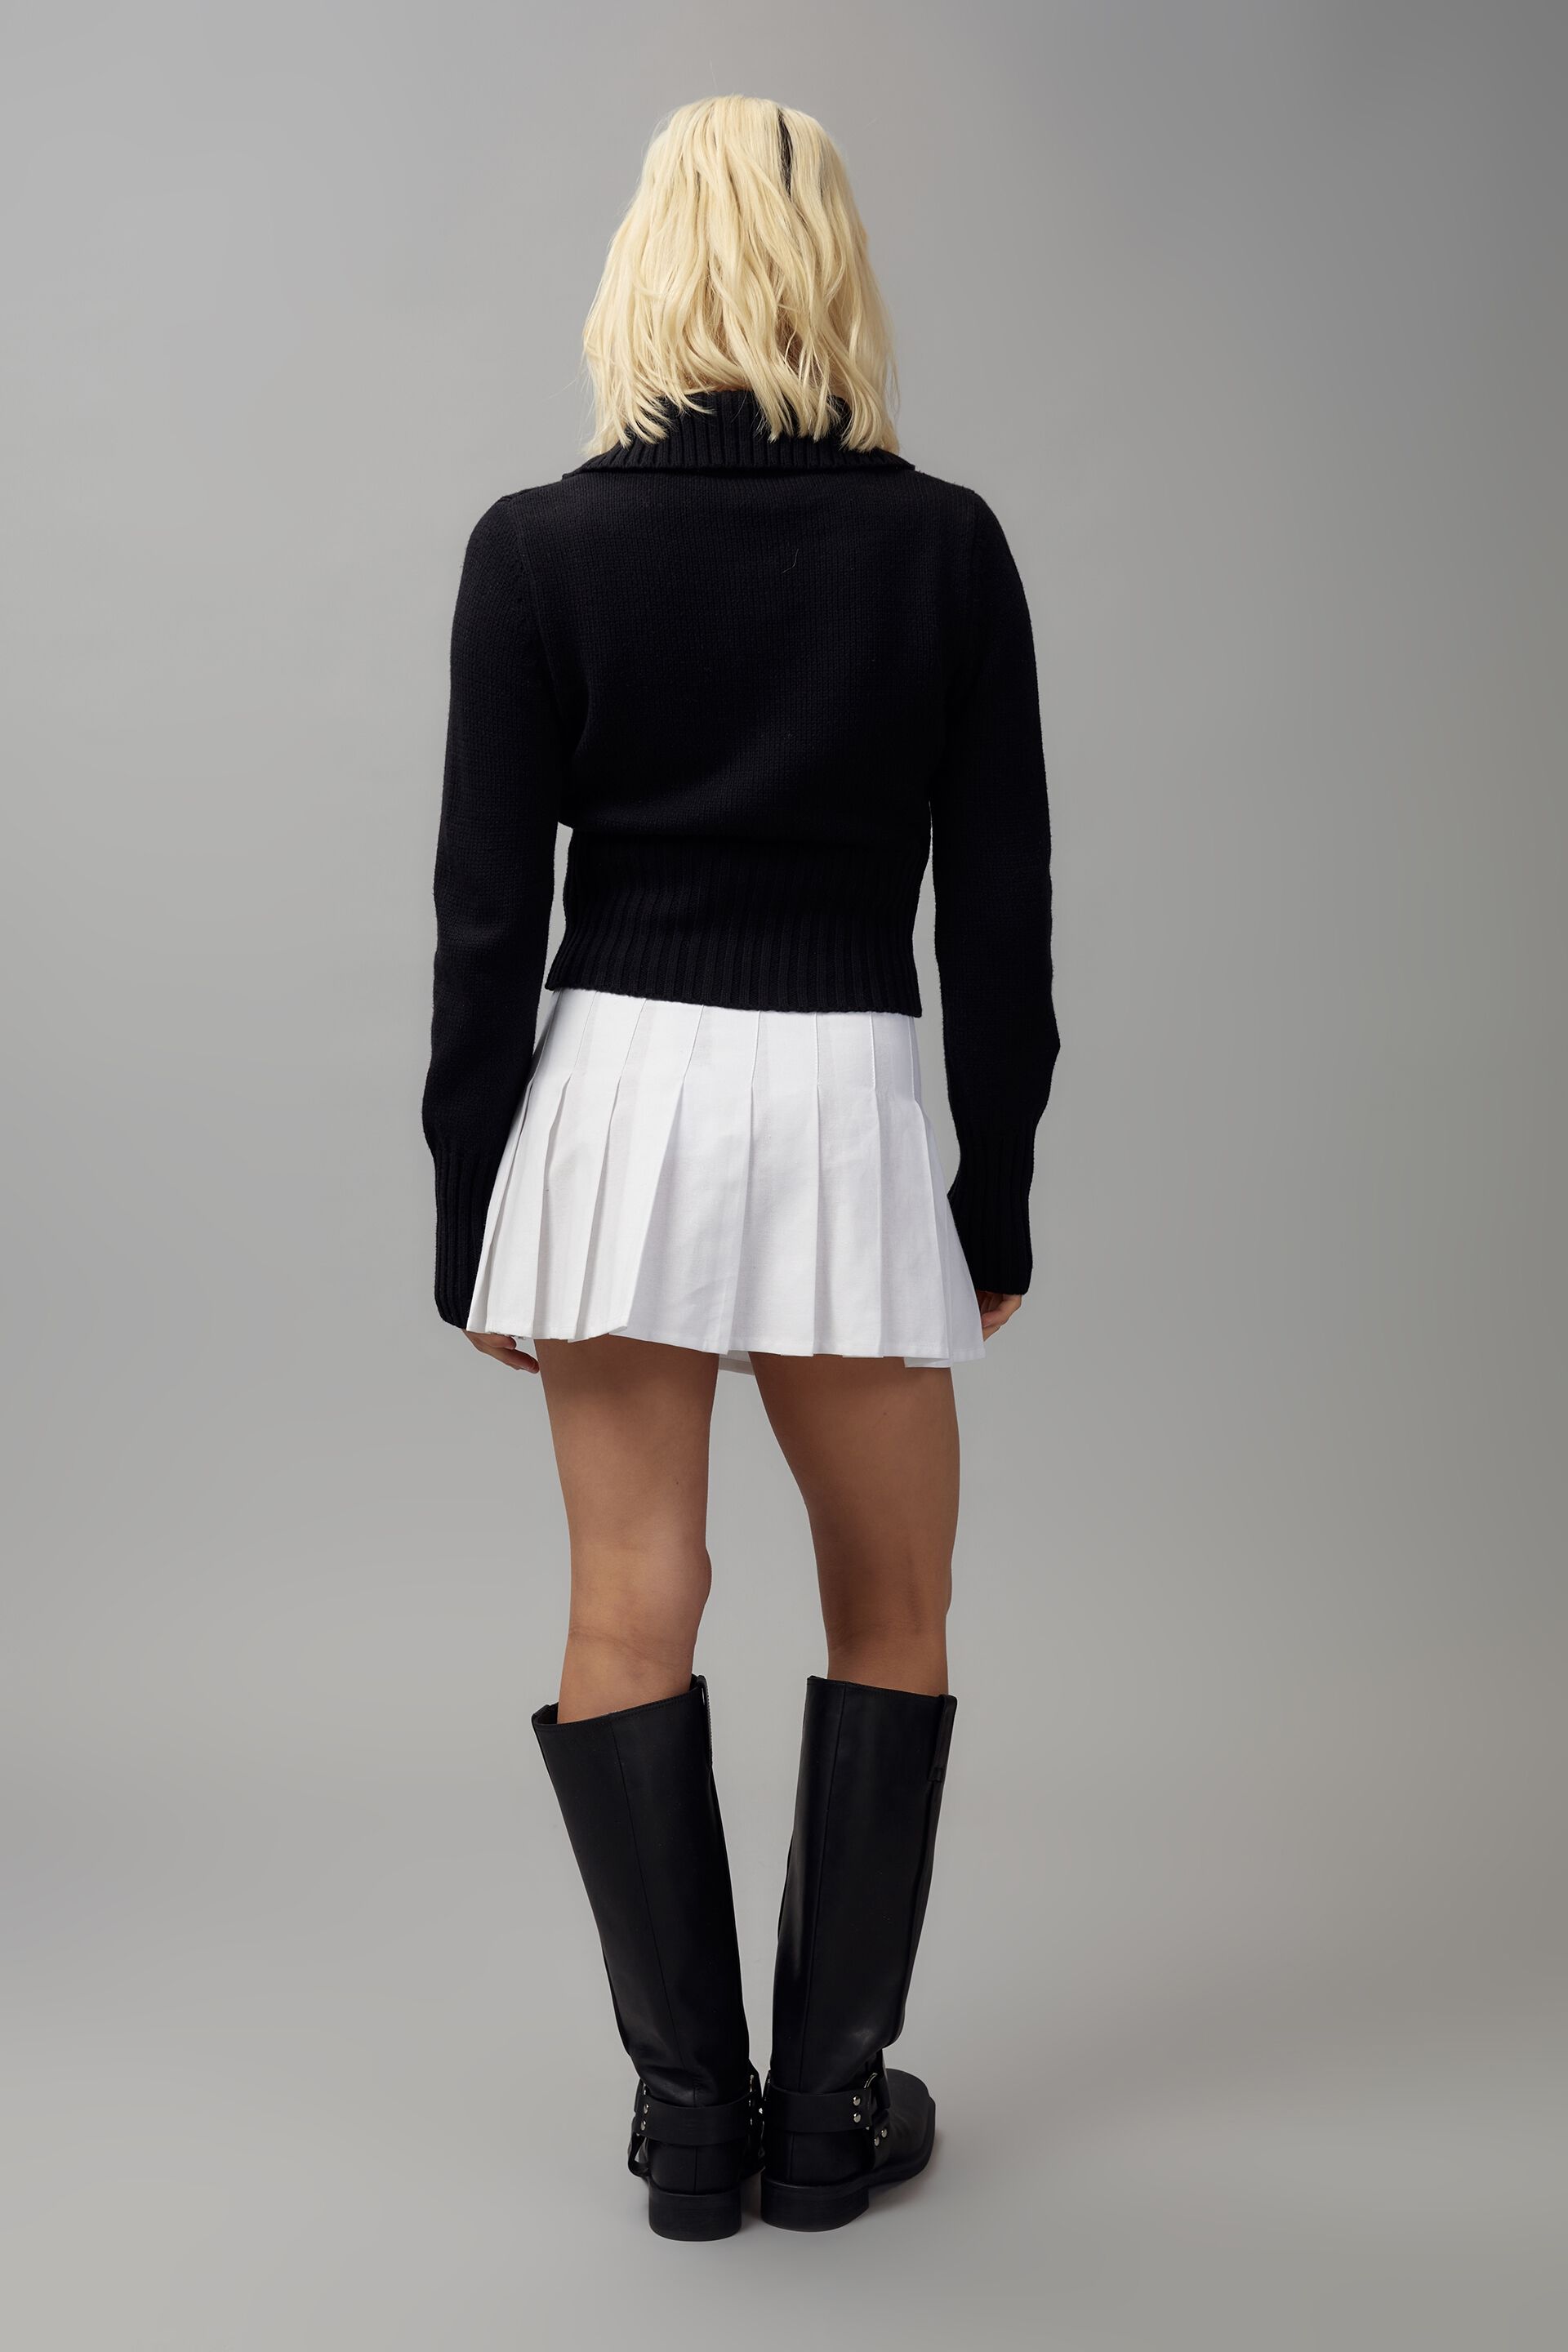 white tennis skirt factorie